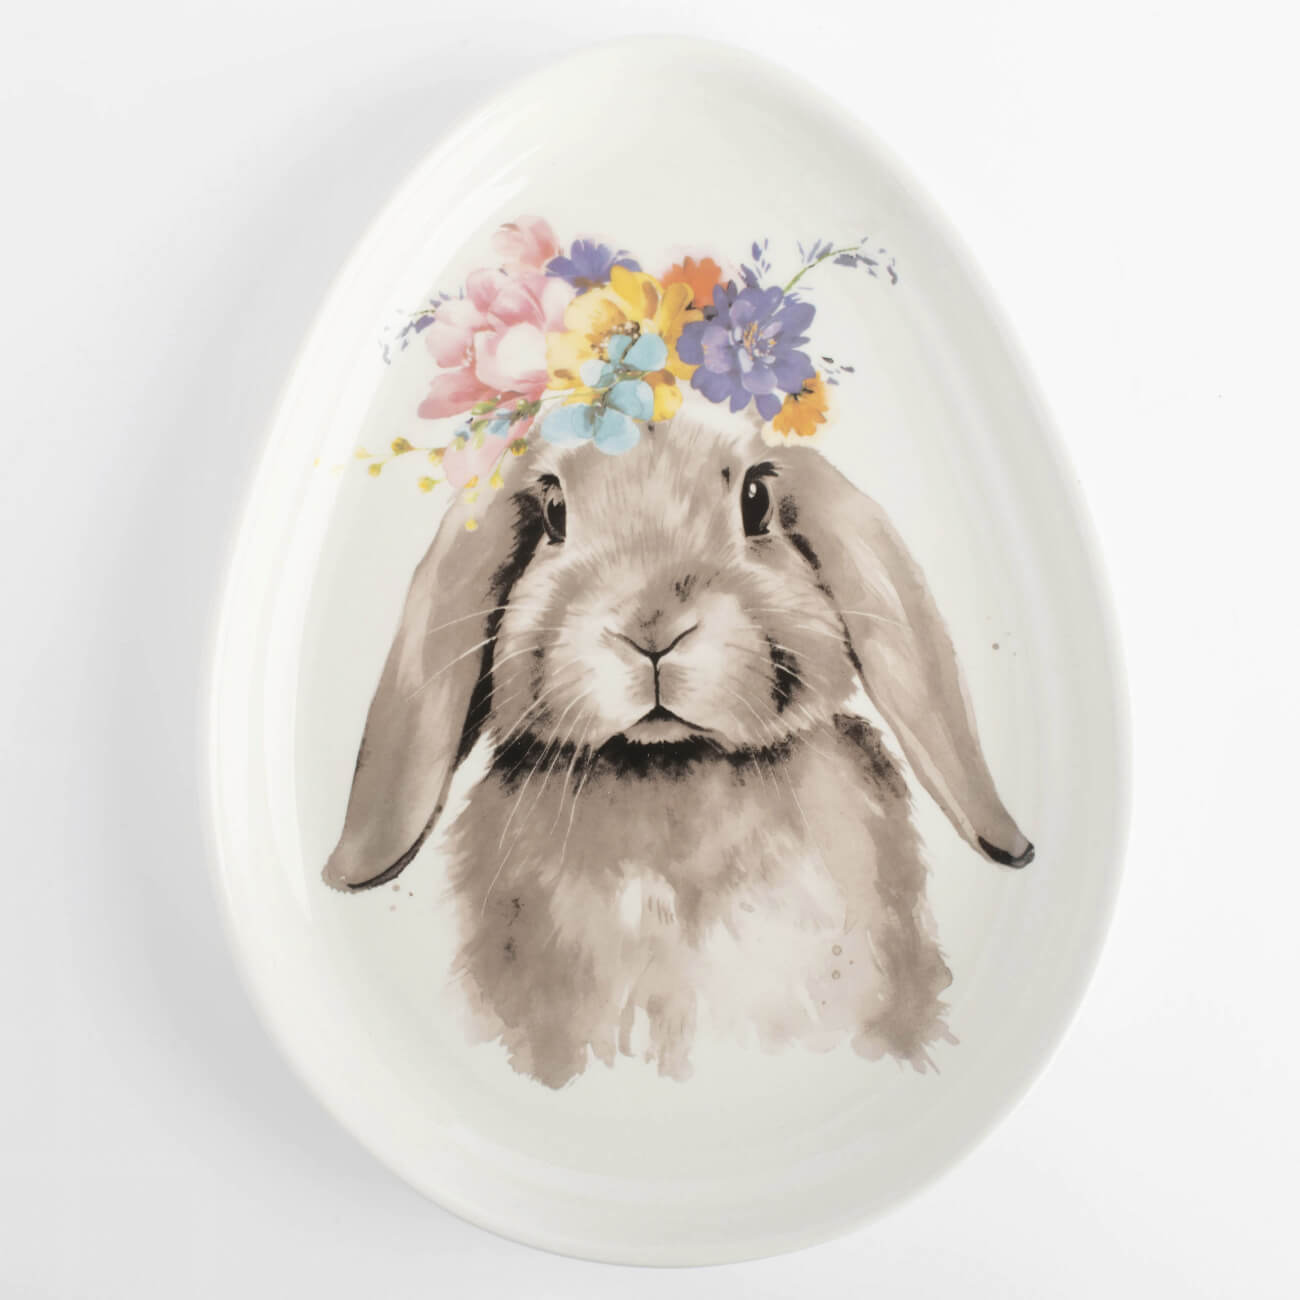 Блюдо, 21х16 см, керамика, белое, Яйцо, Кролик с цветами, Pure Easter блюдо керамика для нарезки круглое 26 см лавандовое лаванда борисовская керамика лав00014172